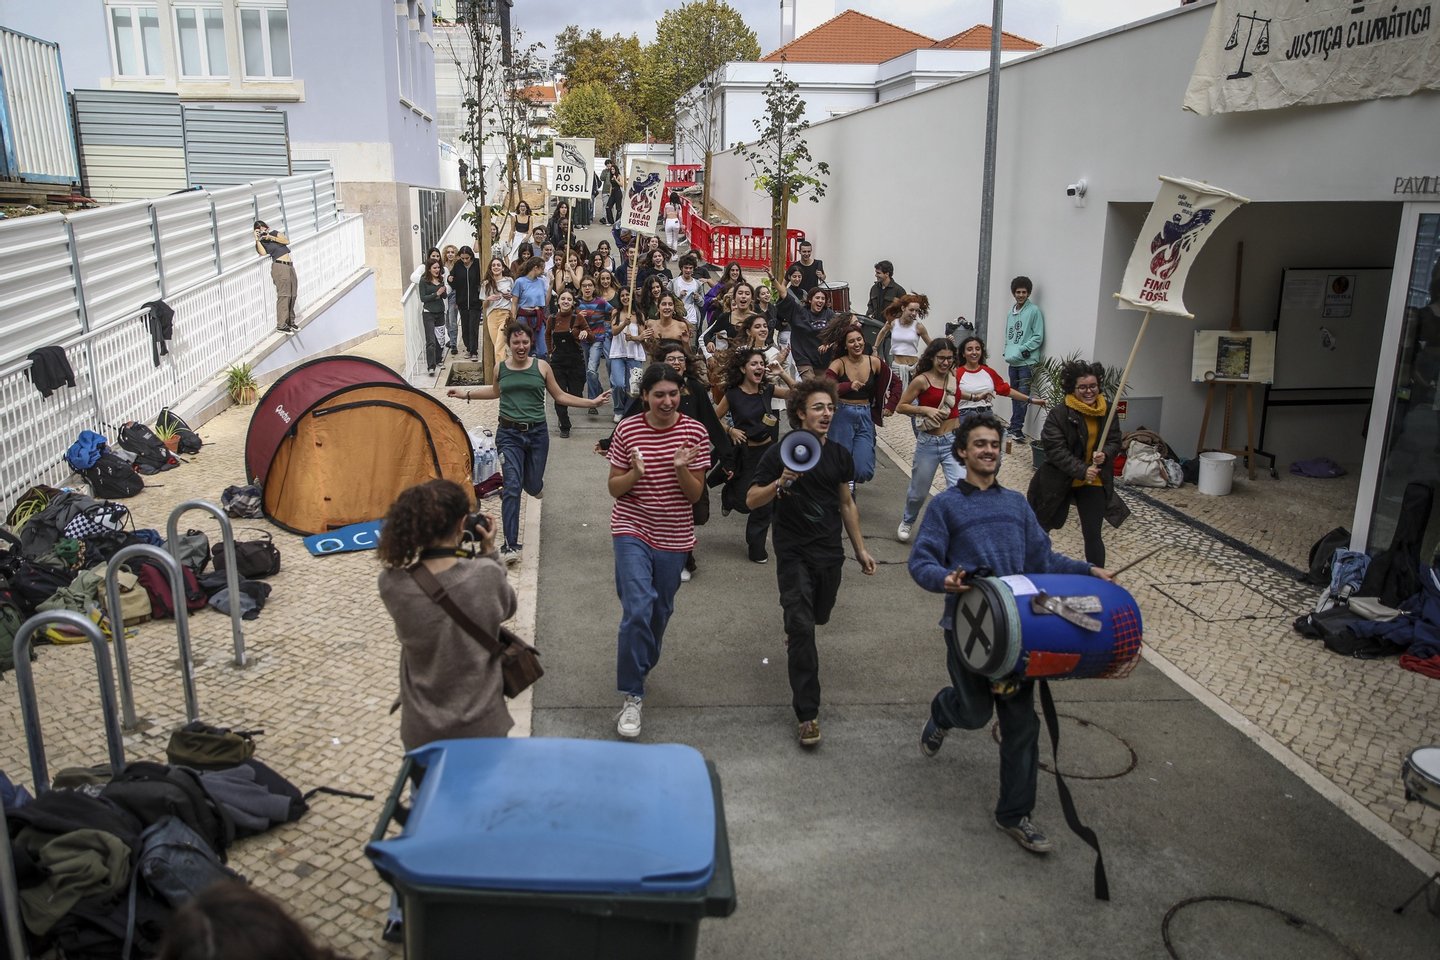 Ativistas climáticos fecharam esta manhã a cadeado dois portões do Liceu Camões, em Lisboa, estando o protesto a decorrer de “forma calma e ordeira”, 14 de novembro de 2022. ANDRÉ KOSTERS/LUSA